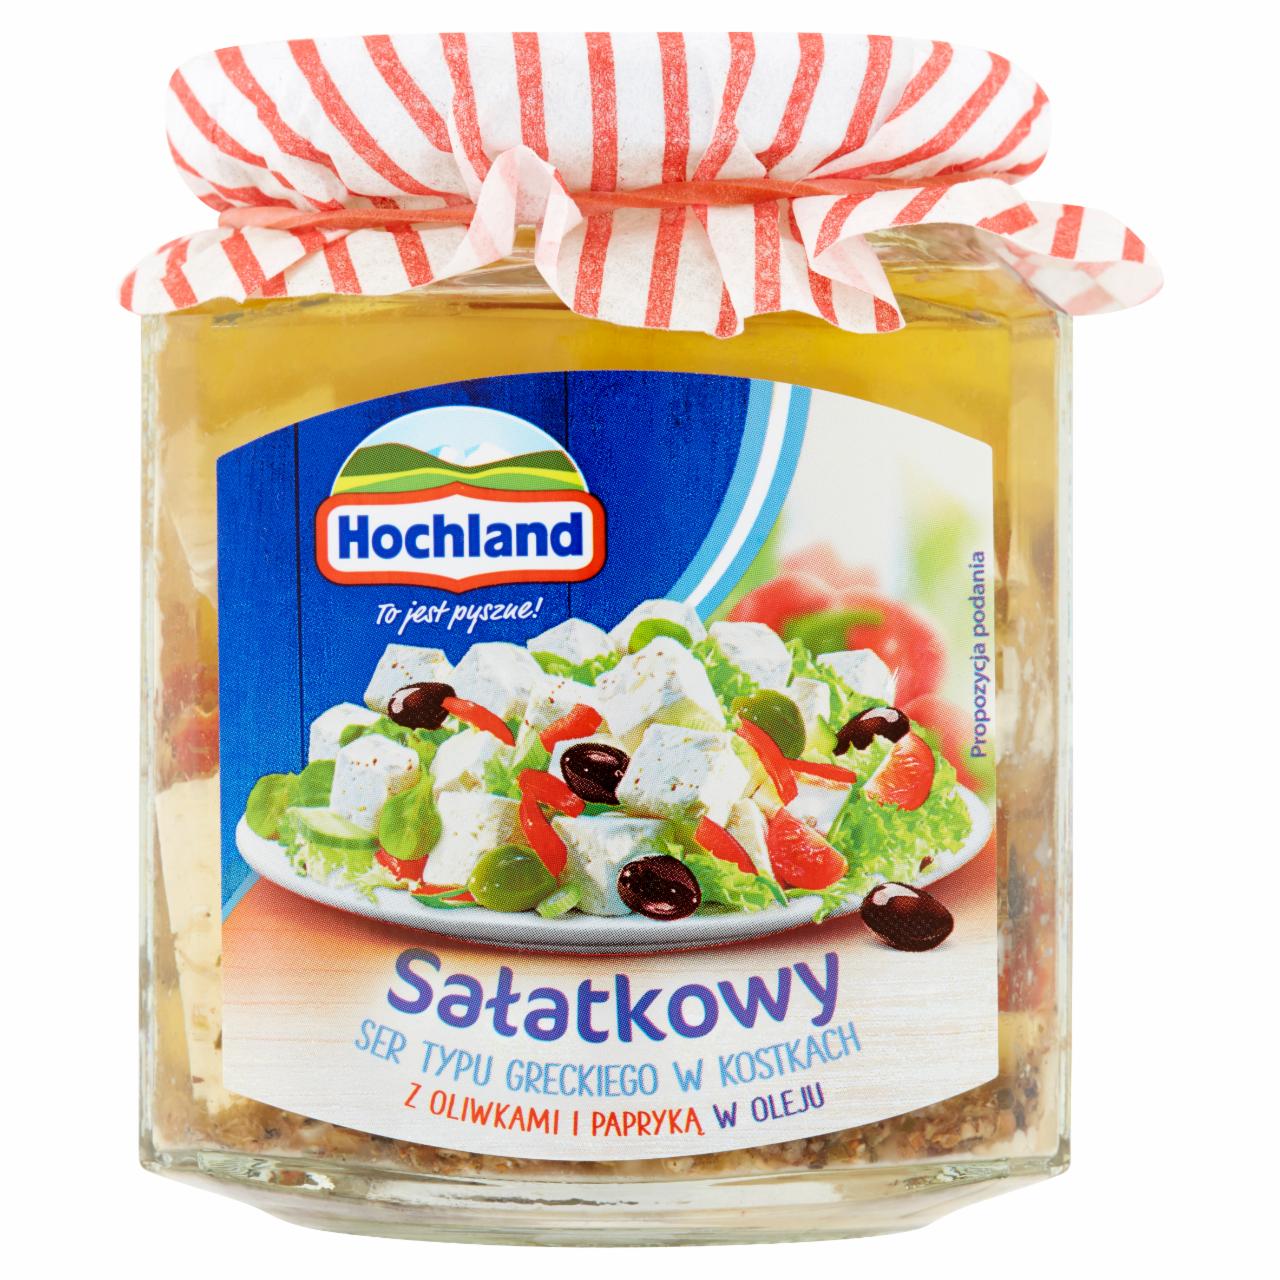 Zdjęcia - Sałatkowy ser typu greckiego w kostkach z oliwkami i papryką w oleju Hochland